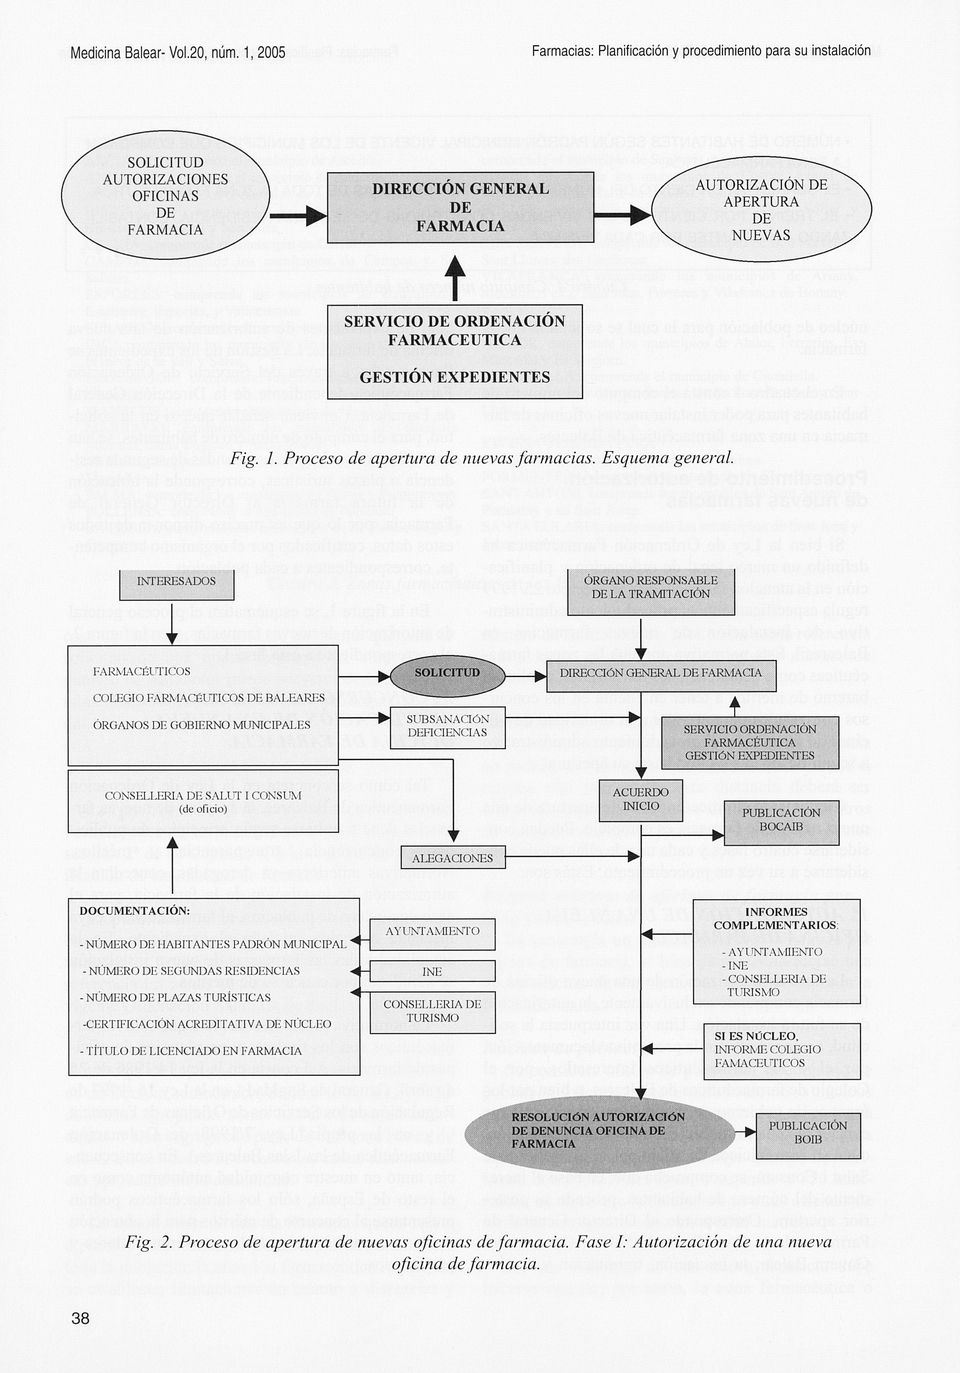 SERVICIO ORDENACIÓN FARMACÉUTICA GESTIÓN EXPEDIENTES CONSELLERIA DE SALUT I CONSUM (de oficio) ACUERDO INICIO PUBLICACIÓN BOCAIB ALEGACIONES DOCUMENTACIÓN: - NÚMERO DE HABITANTES PADRÓN MUNICIPAL -